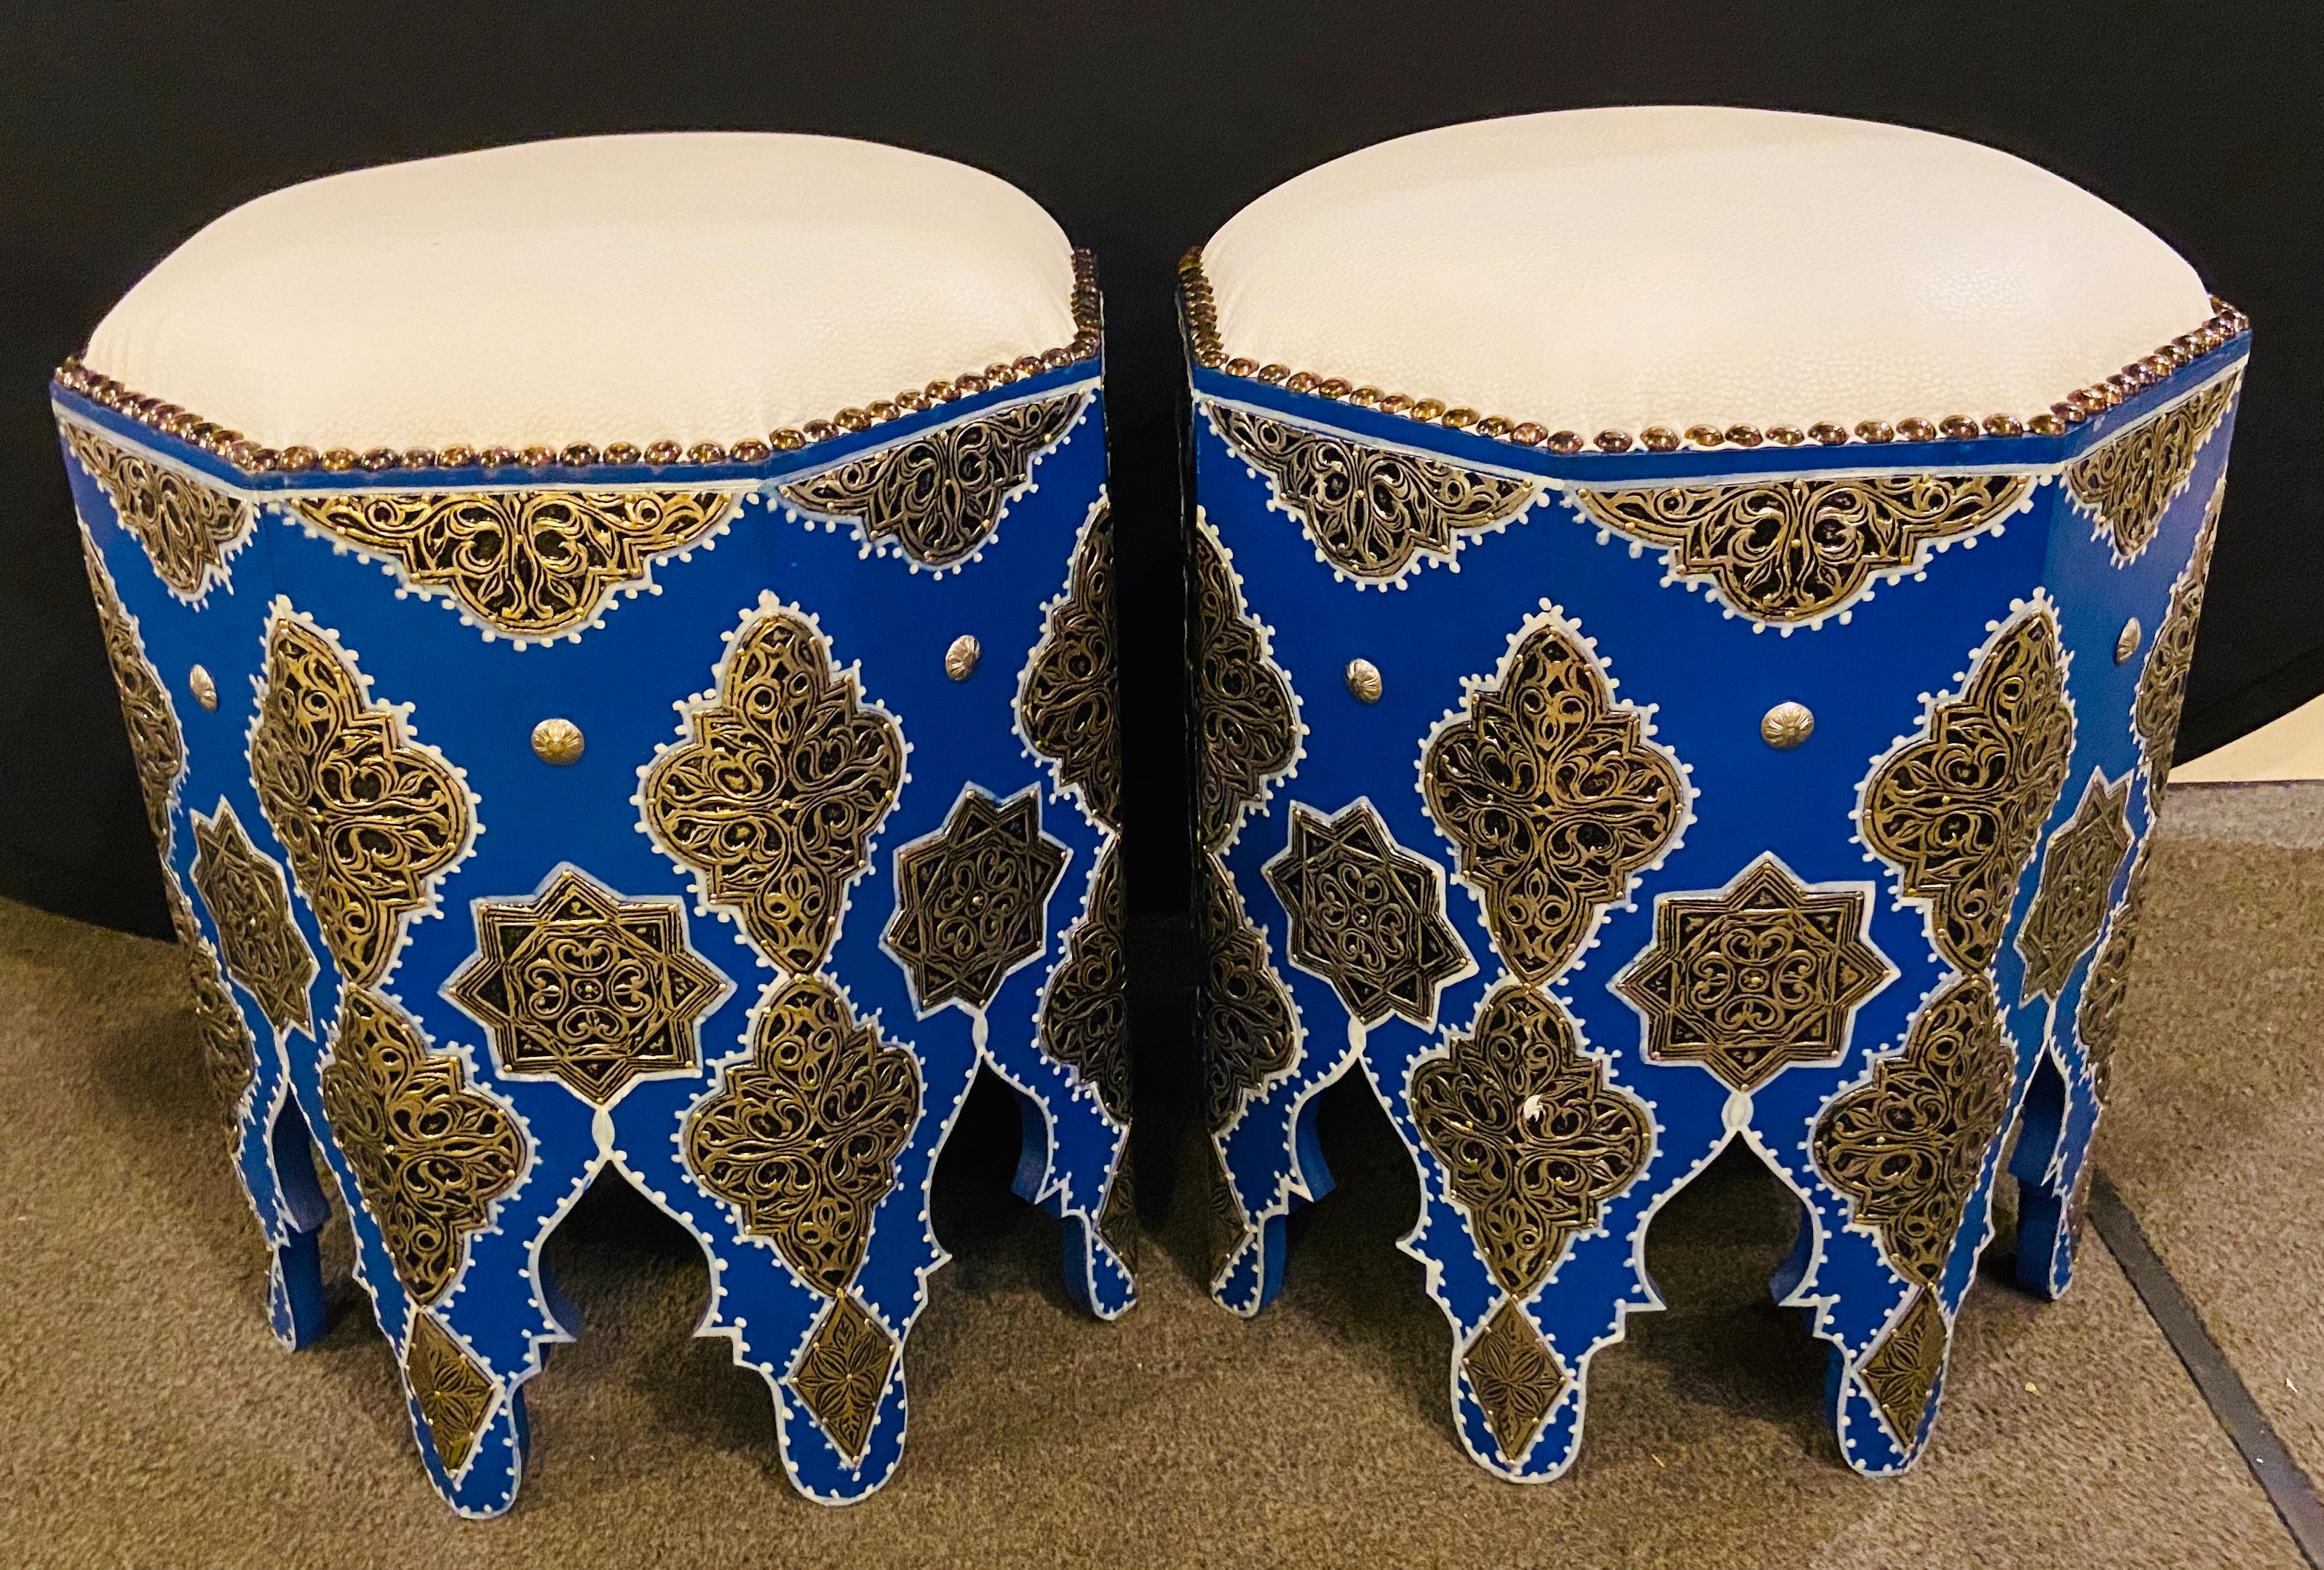 Un tabouret ou ottoman marocain bleu Boho Chic avec dessus en cuir blanc. Les tabourets sont peints à la main en bleu Majorelle (d'après le jardin Majorelle à Marrakech) avec un design blanc et présentent un travail filigrané en laiton argenté ainsi